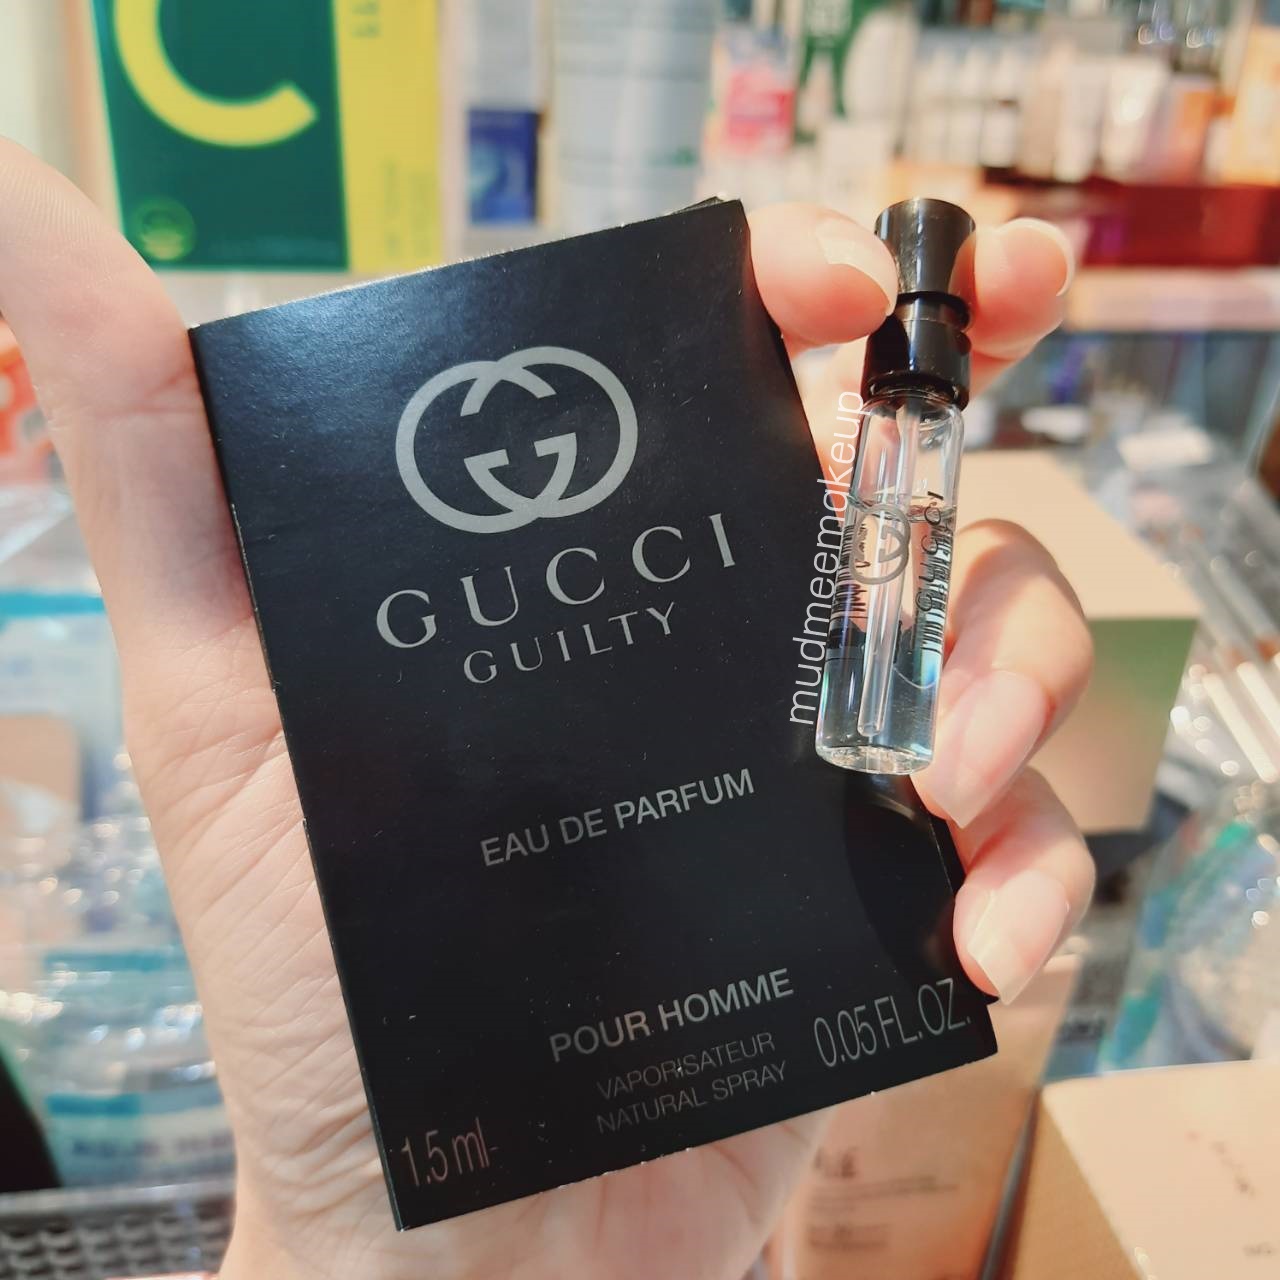 Gucci Guilty Pour Homme Eau de Parfum 1.5ml